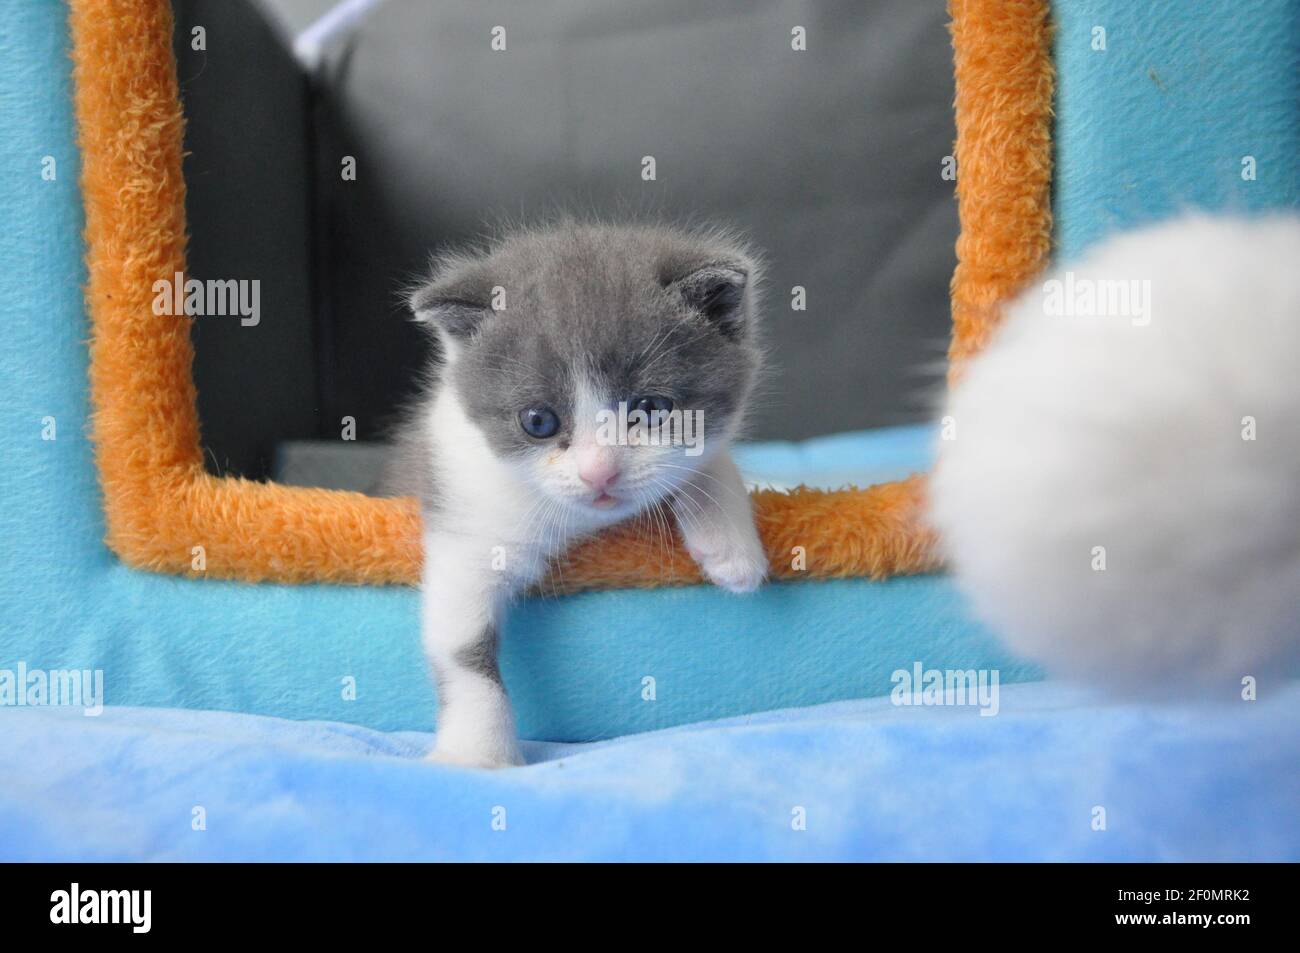 Un grupo de fotos publicadas por Sinogene Biotechnology Company muestran el gatito  clonado 'Garlic' nacido el 21 de julio, que es el primer gato clonado con  éxito en el país, en Beijing,